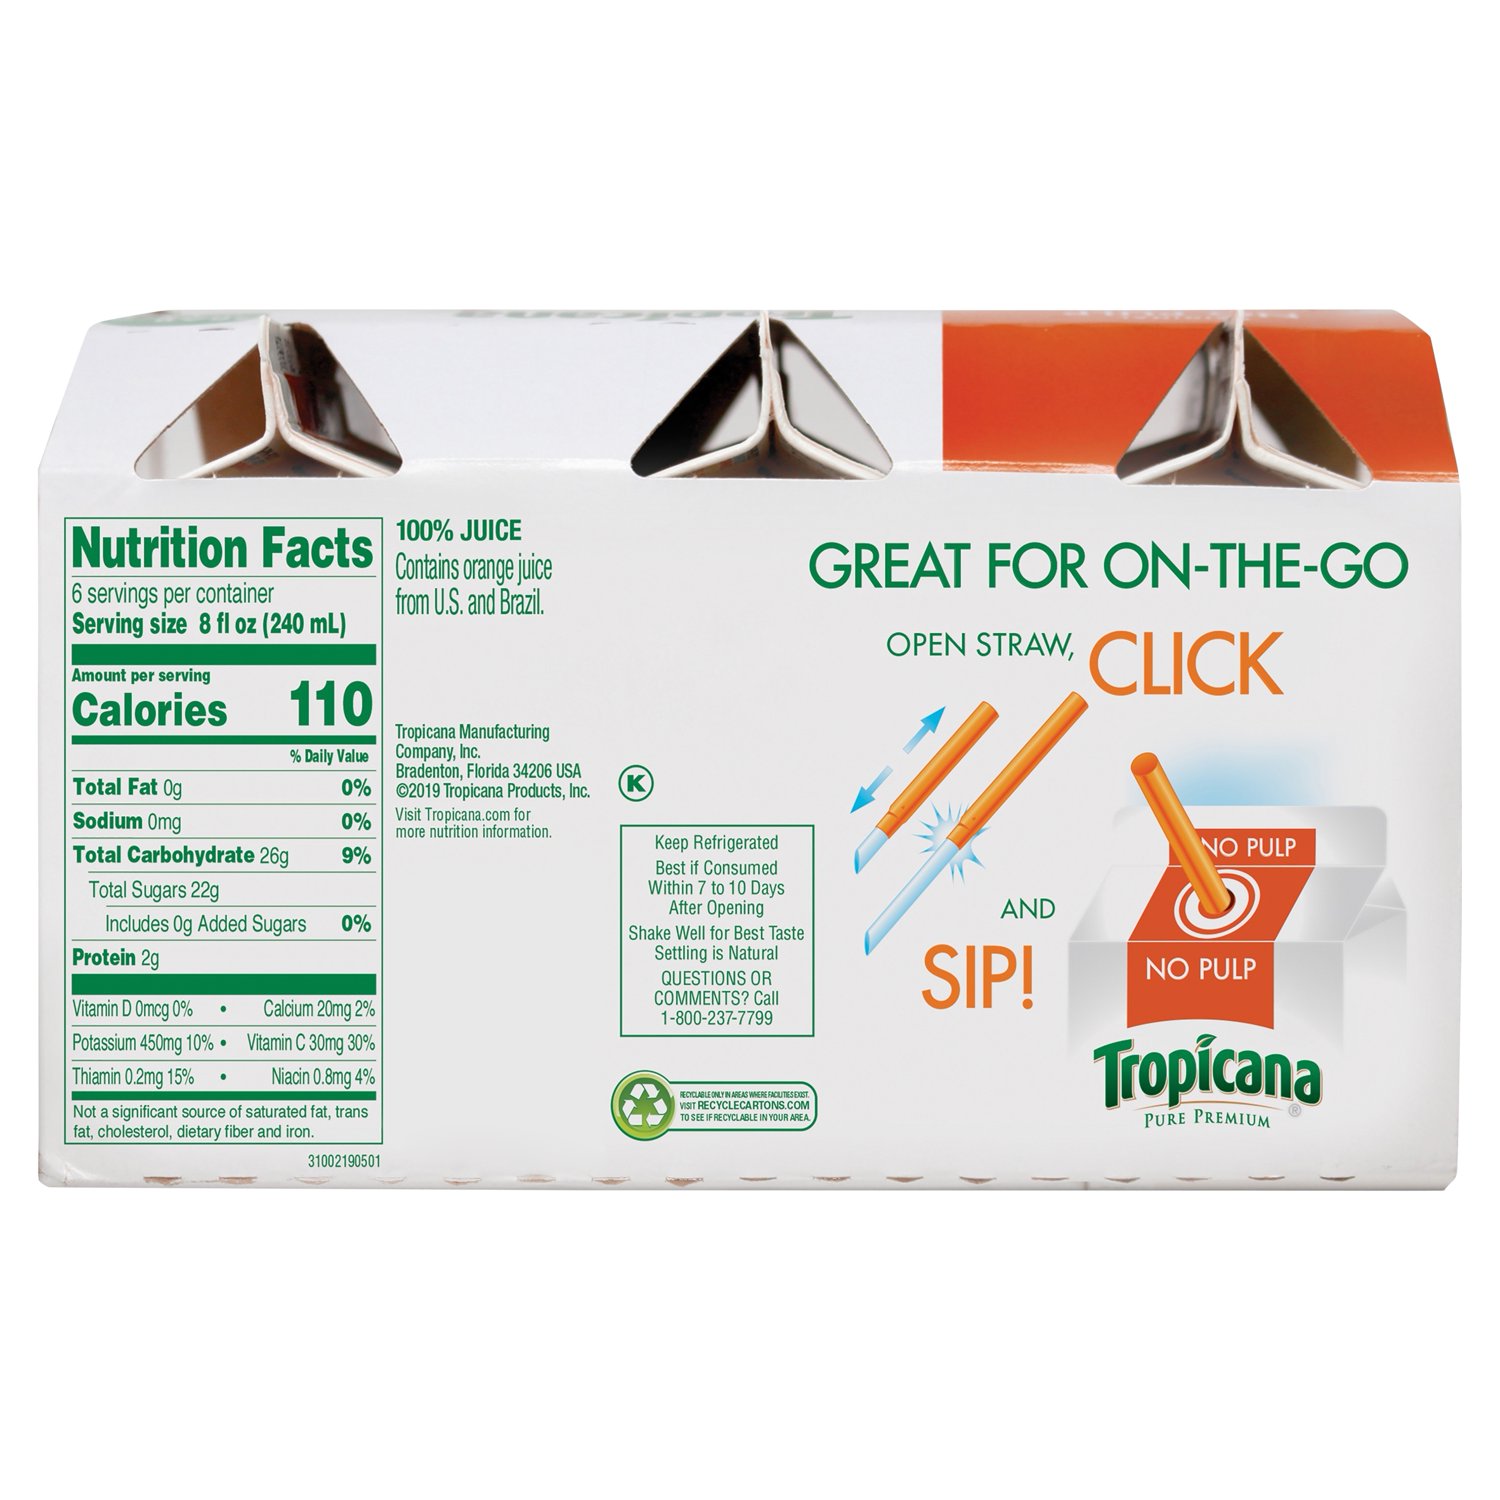 Tropicana Pure Premium, No Pulp 100% Orange Juice, 8 oz, 6 Pack - image 5 of 9